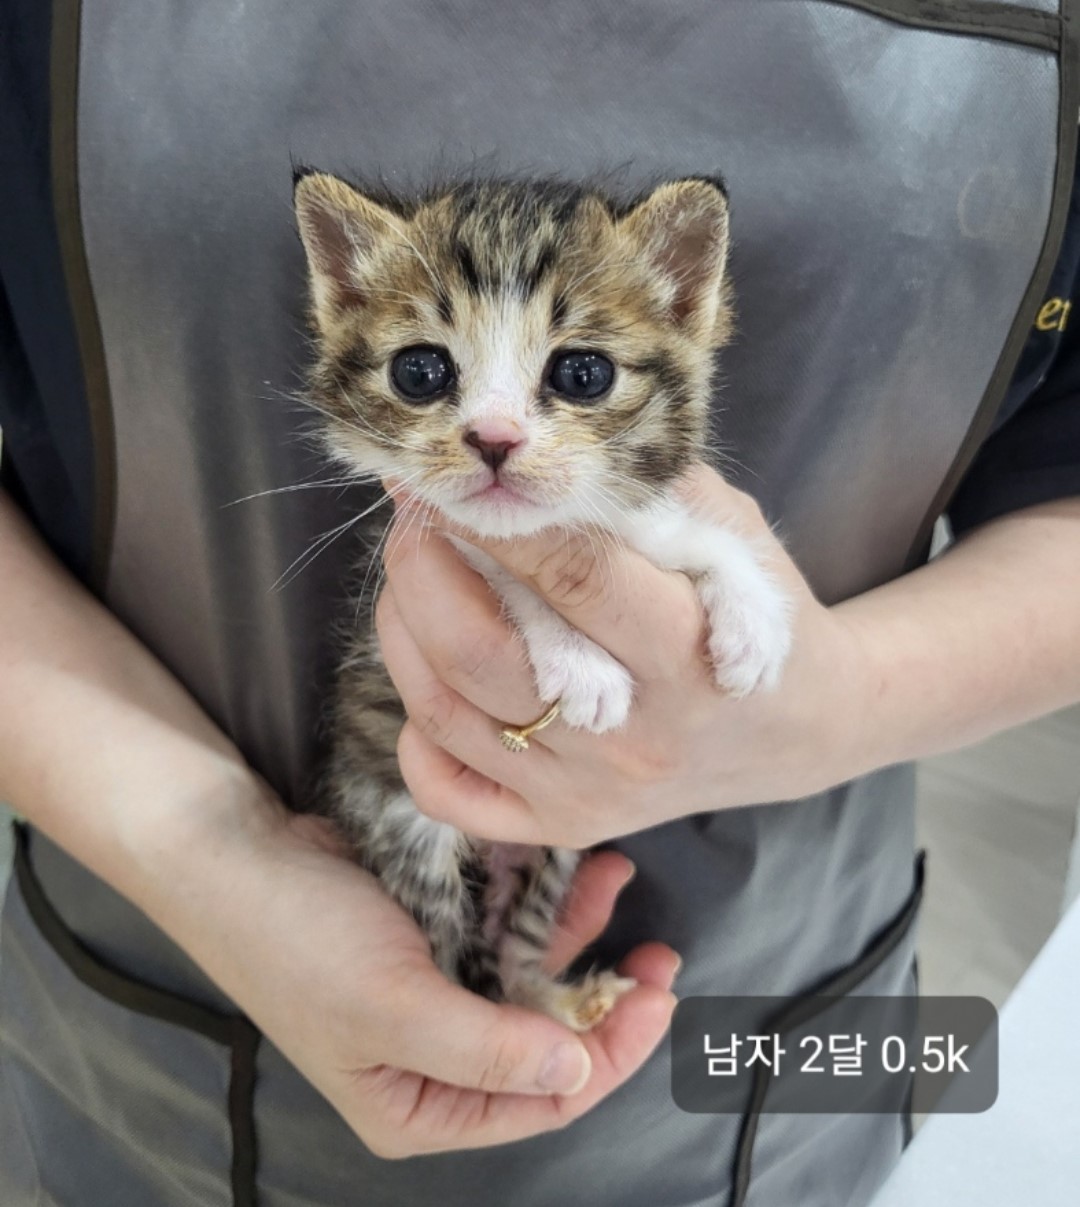 공고 번호가 충북-옥천-2024-00181인 한국 고양이 동물 사진